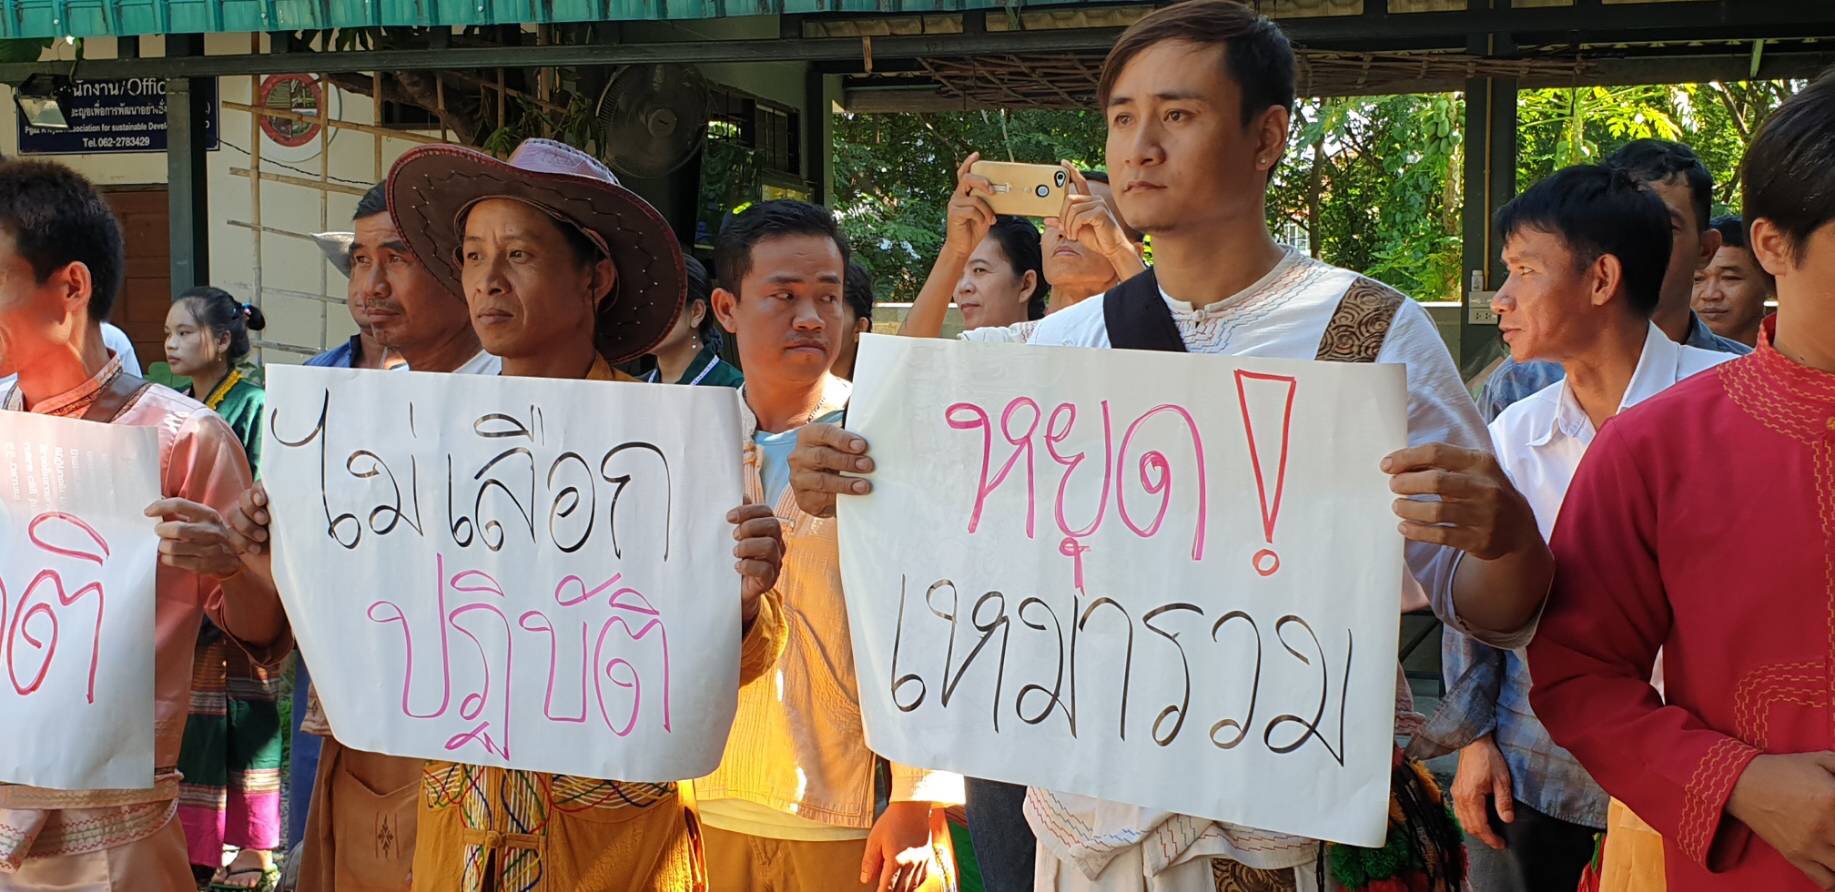 ตัวแทนกลุ่มชนเผ่าและเครือข่ายชาวไทยใหญ่ ออกแถลงการณ์เรียกร้องขอความเป็นธรรมต่อสื่อ ขอให้ยุตินำเสนอข่าวที่เป็นอคติ ต่อกลุ่มชาติพันธุ์ ตีตราเหมารวม ทำให้เกิดความแตกแยก หลังมีข่าวปัญหาแก๊งค์วัยรุ่น